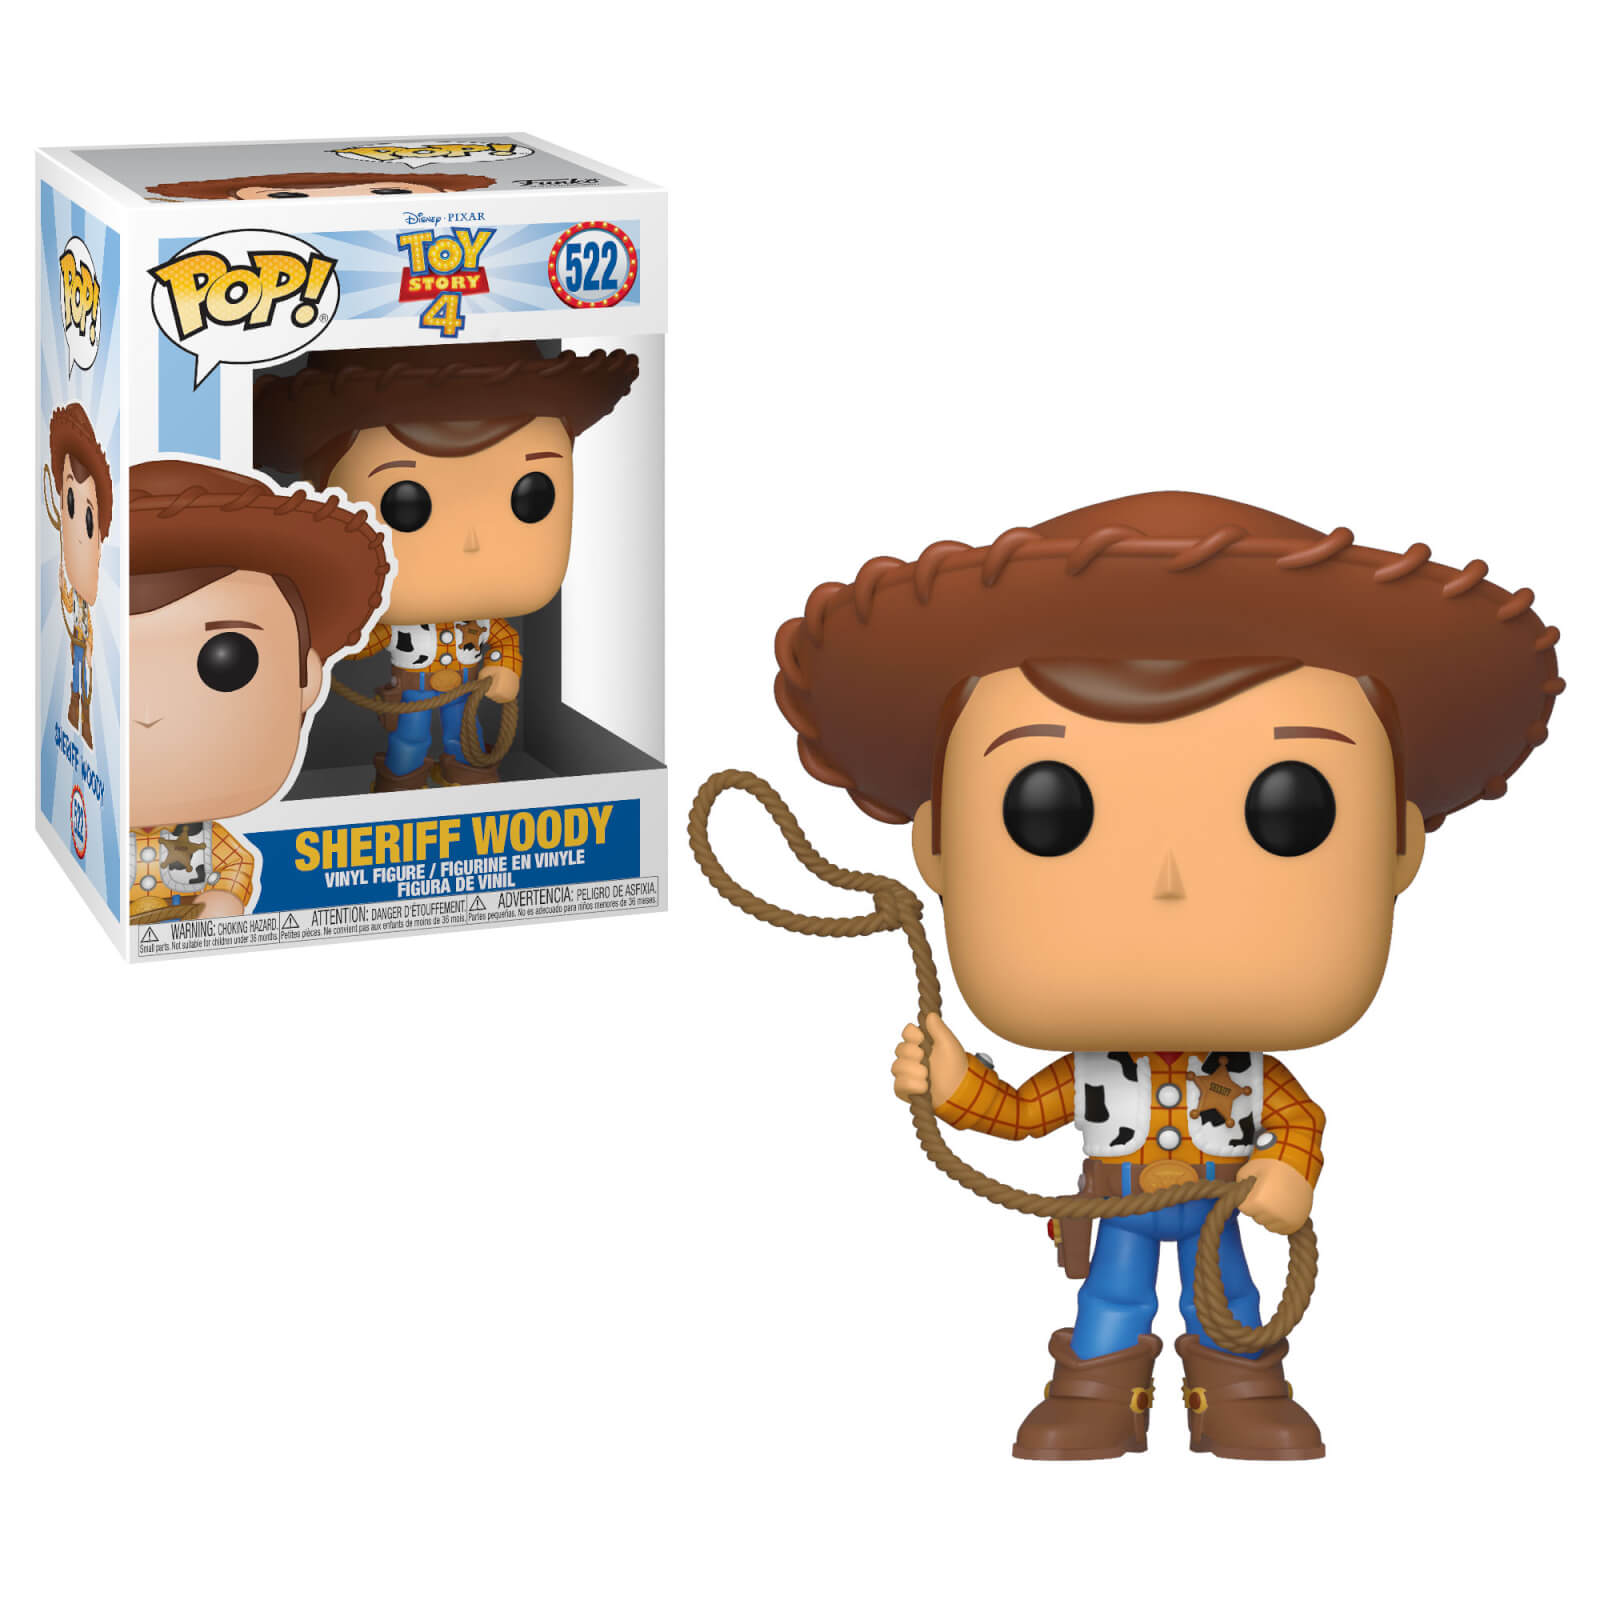 POP! Disney Pixar Toy Story 4: Sheriff Woody